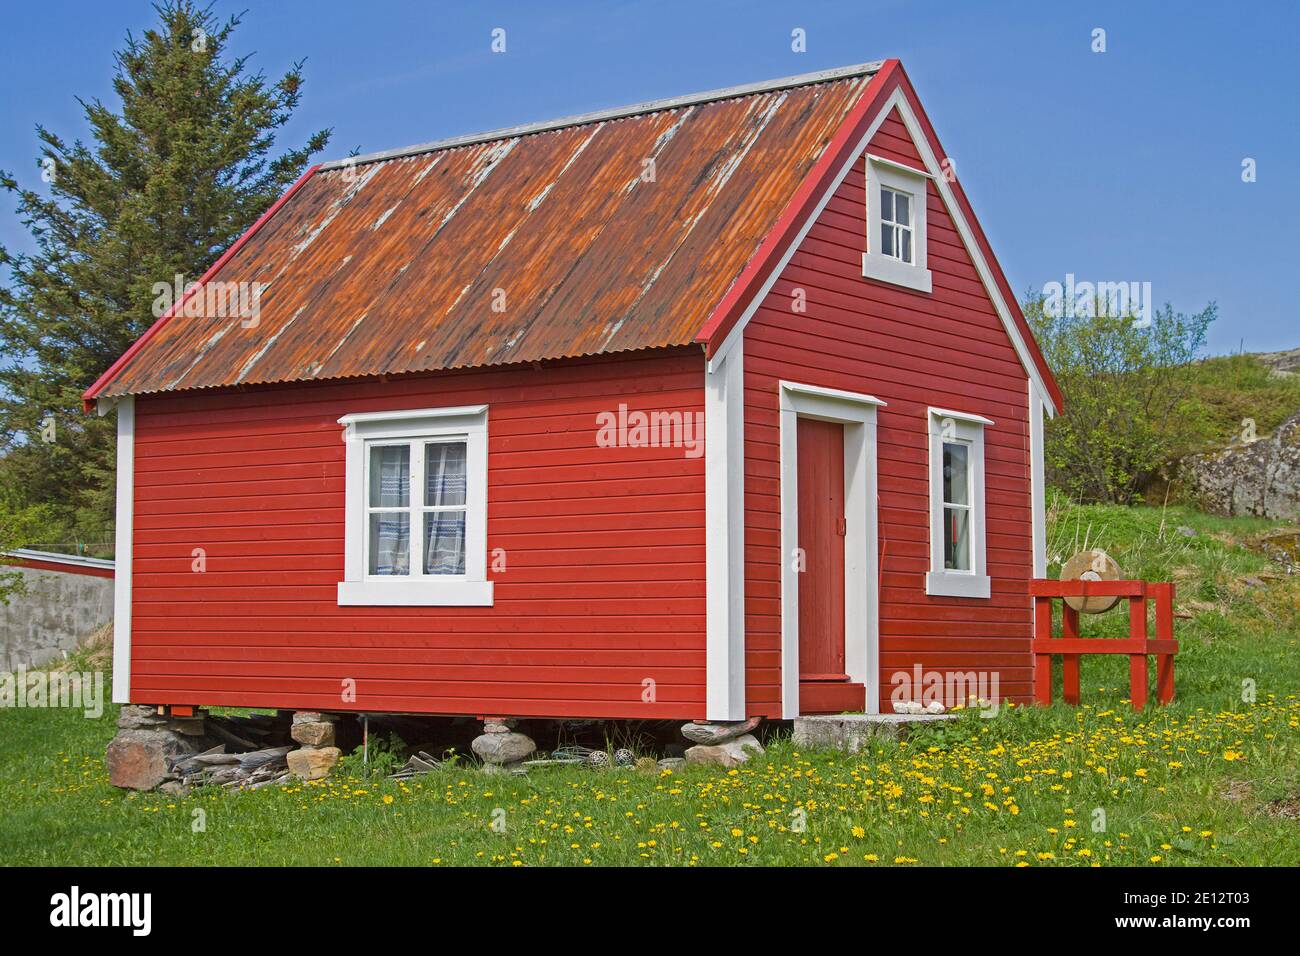 Kleines Norwegisches Haus Auf Stelzen Steht In Der Mitte Von Eine blühende Löwenzahn Wiese Stockfoto